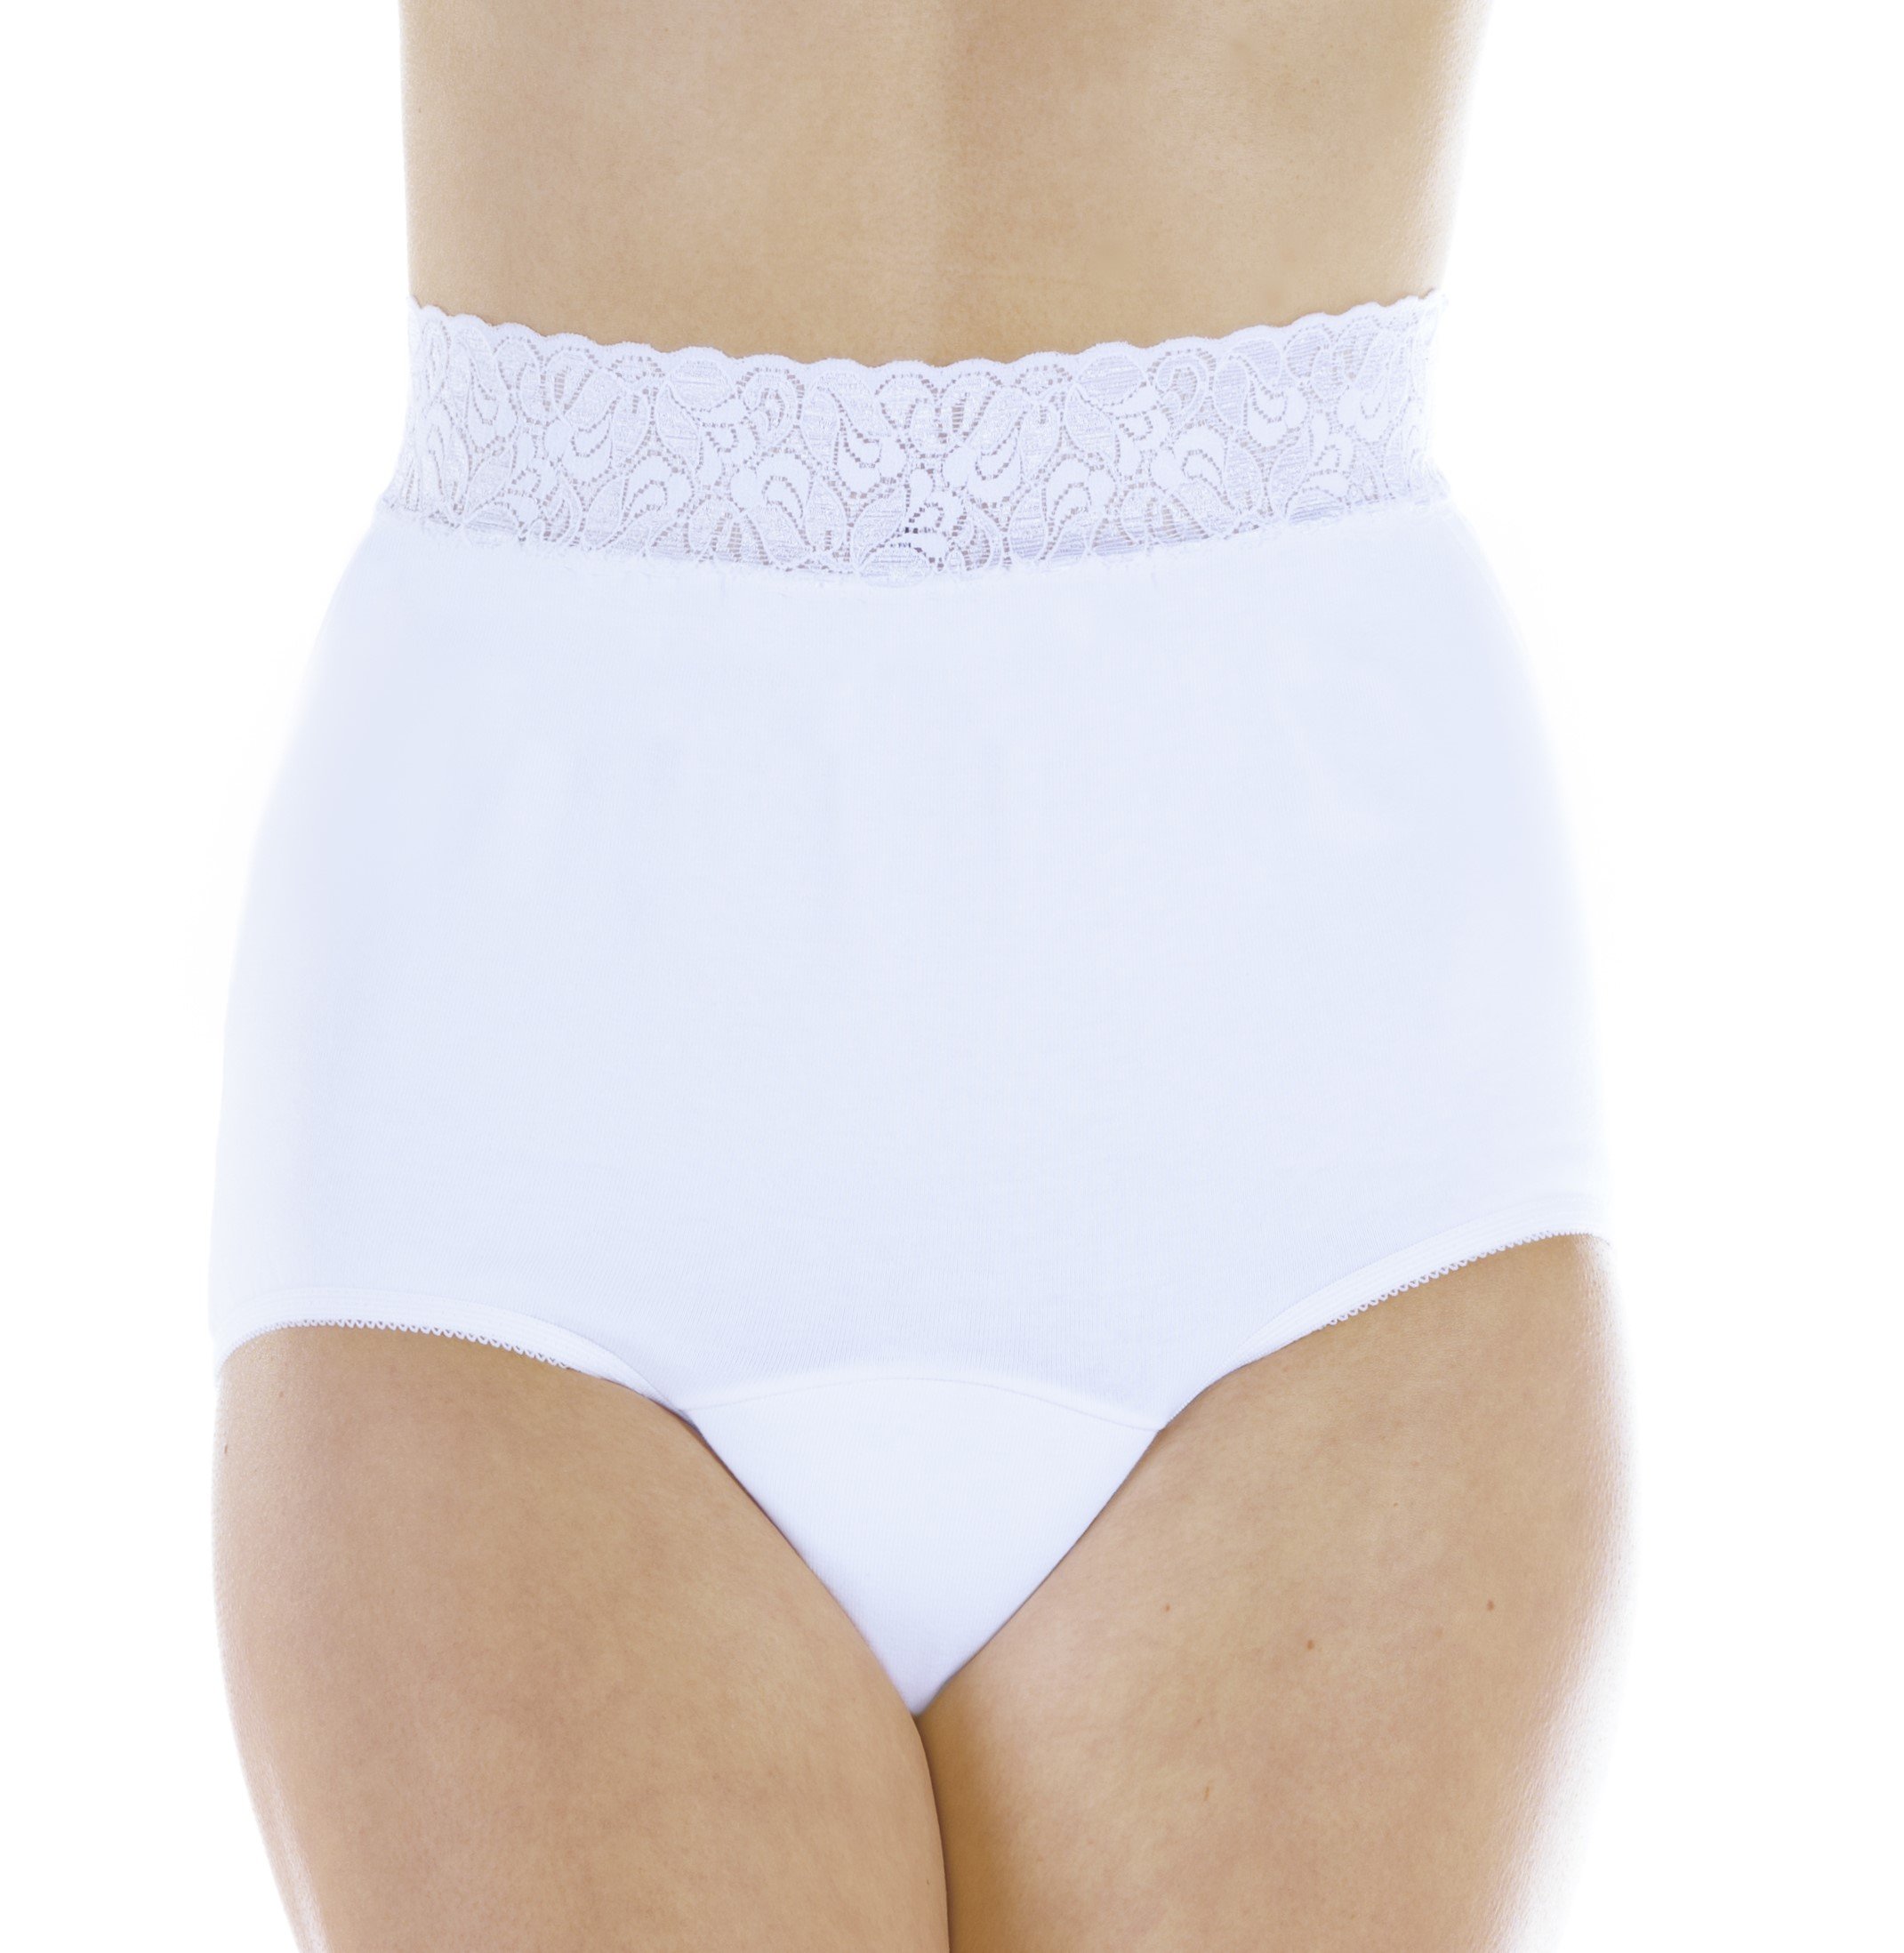 Lace Trim Panties - Wearever L10 - Regular Absorbency - Wearever